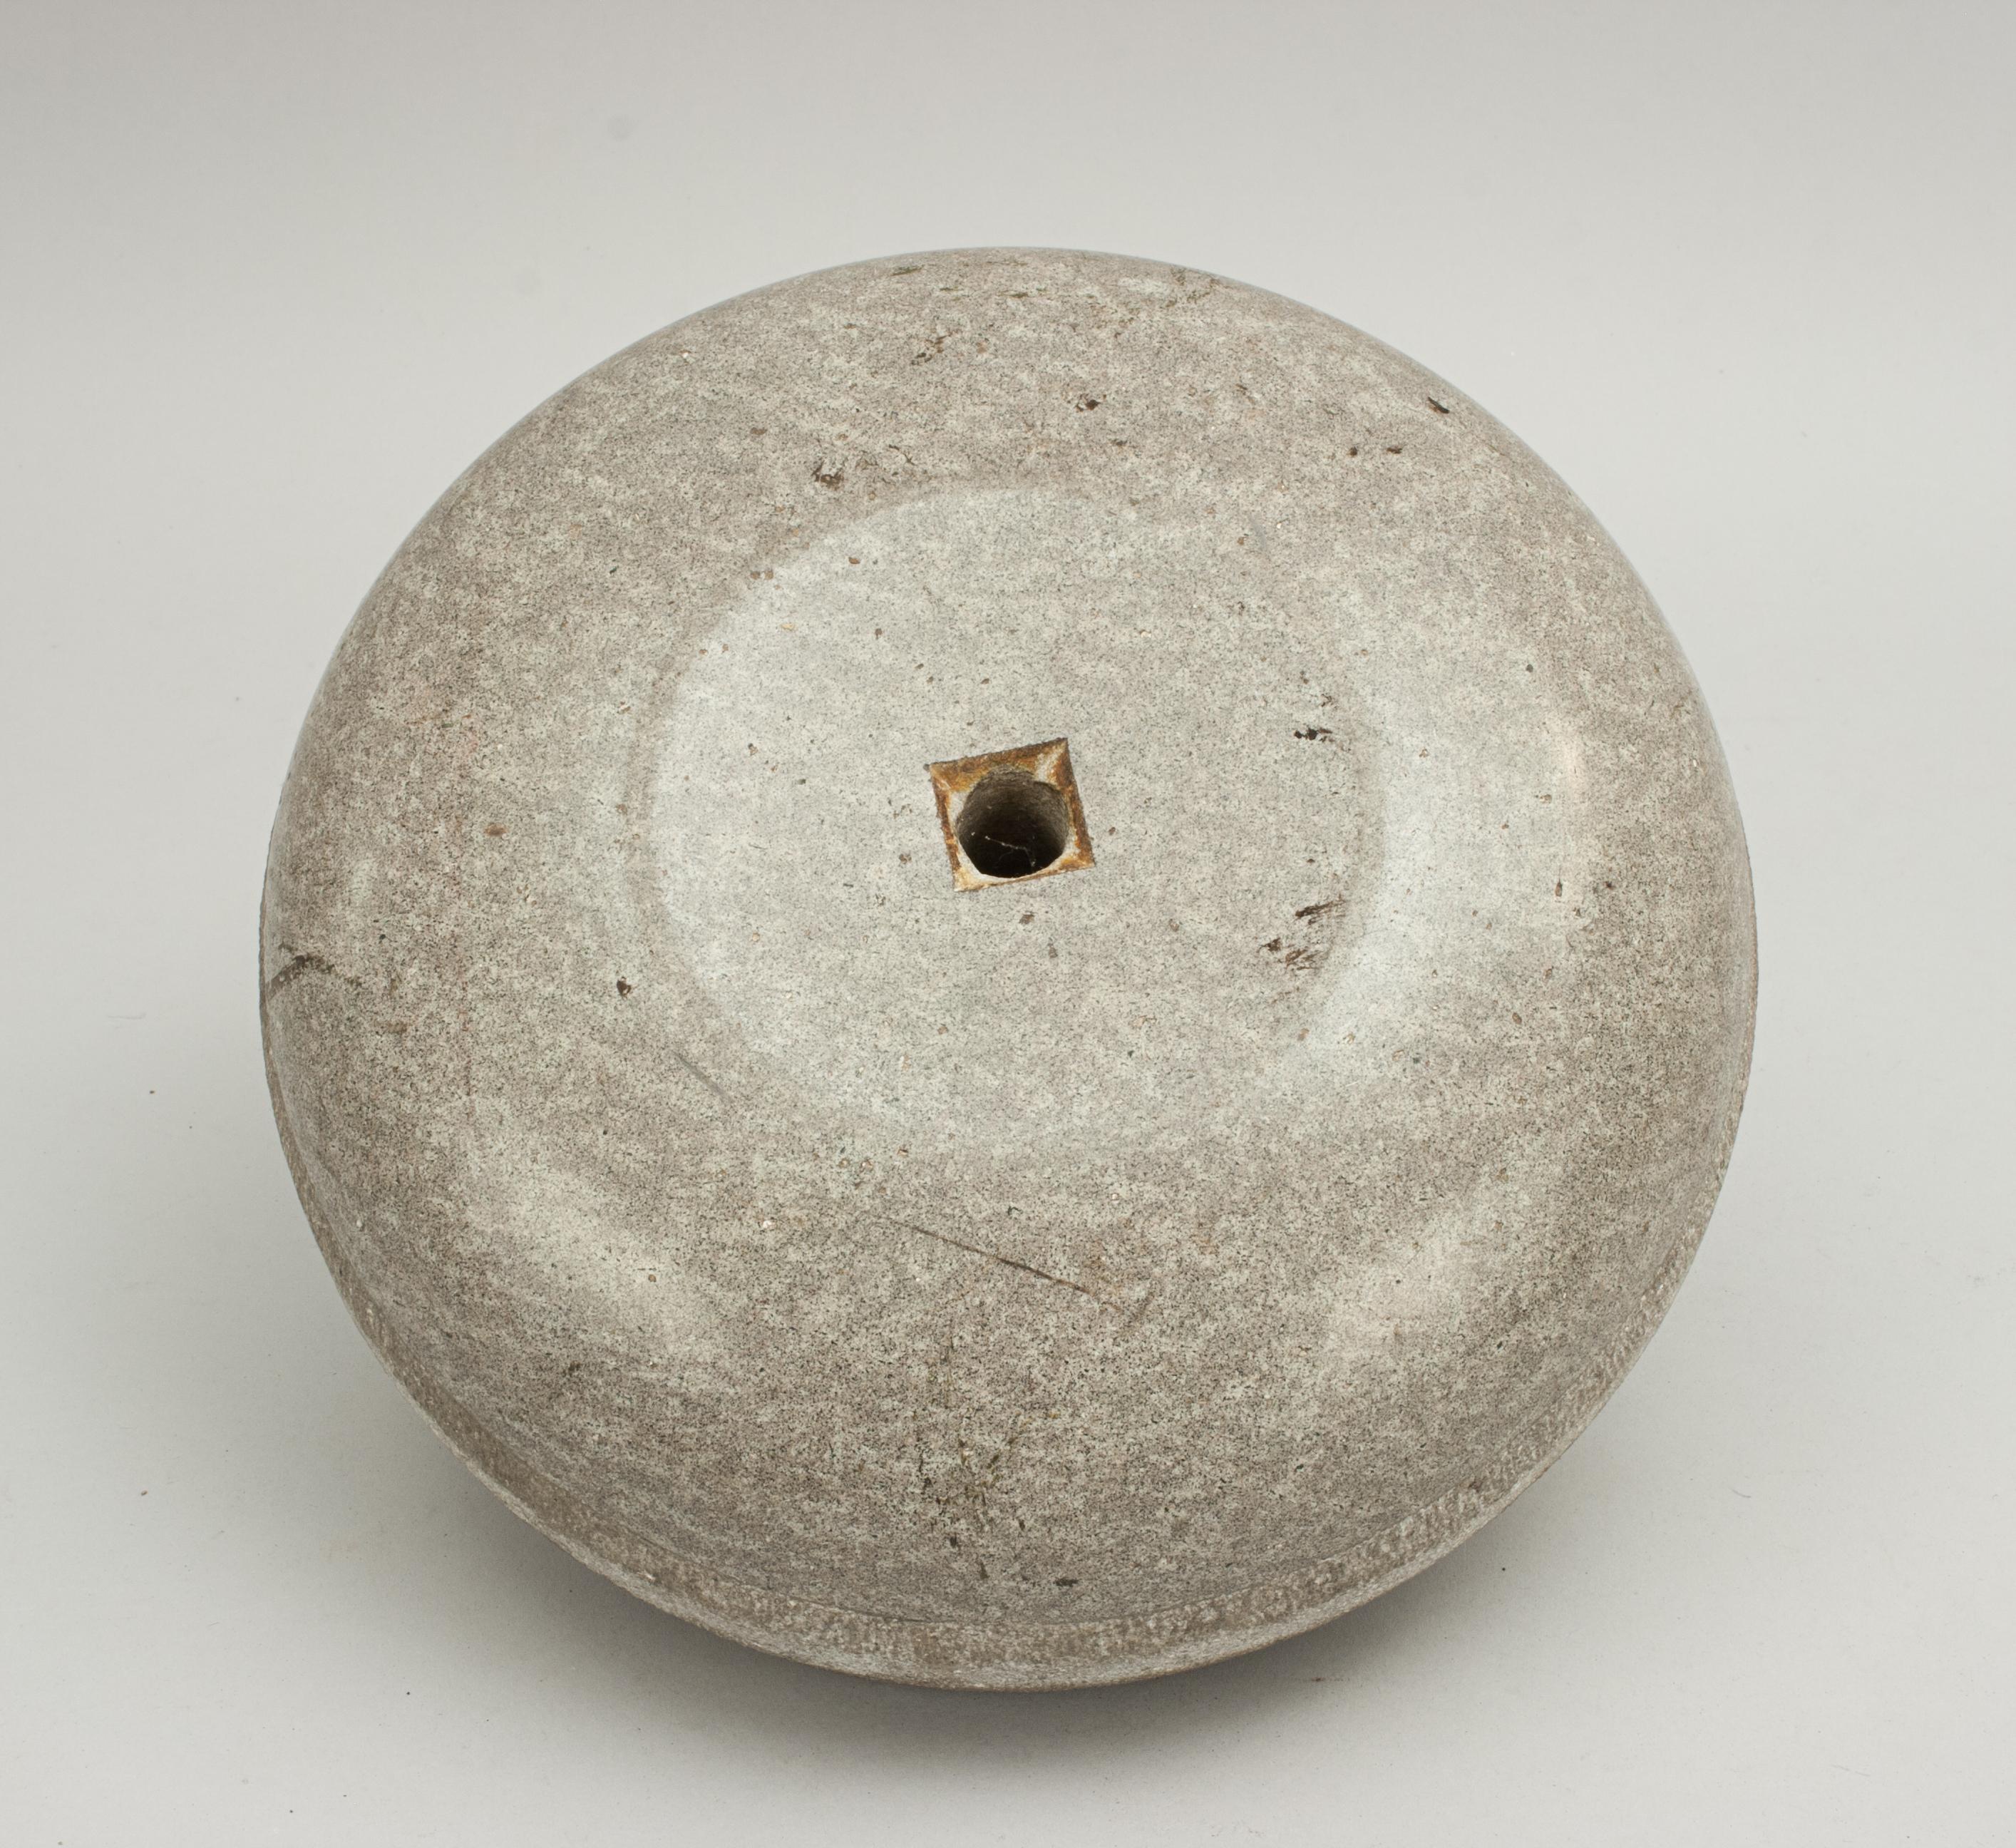 Antique Curling Stone in Wicker Basket 2